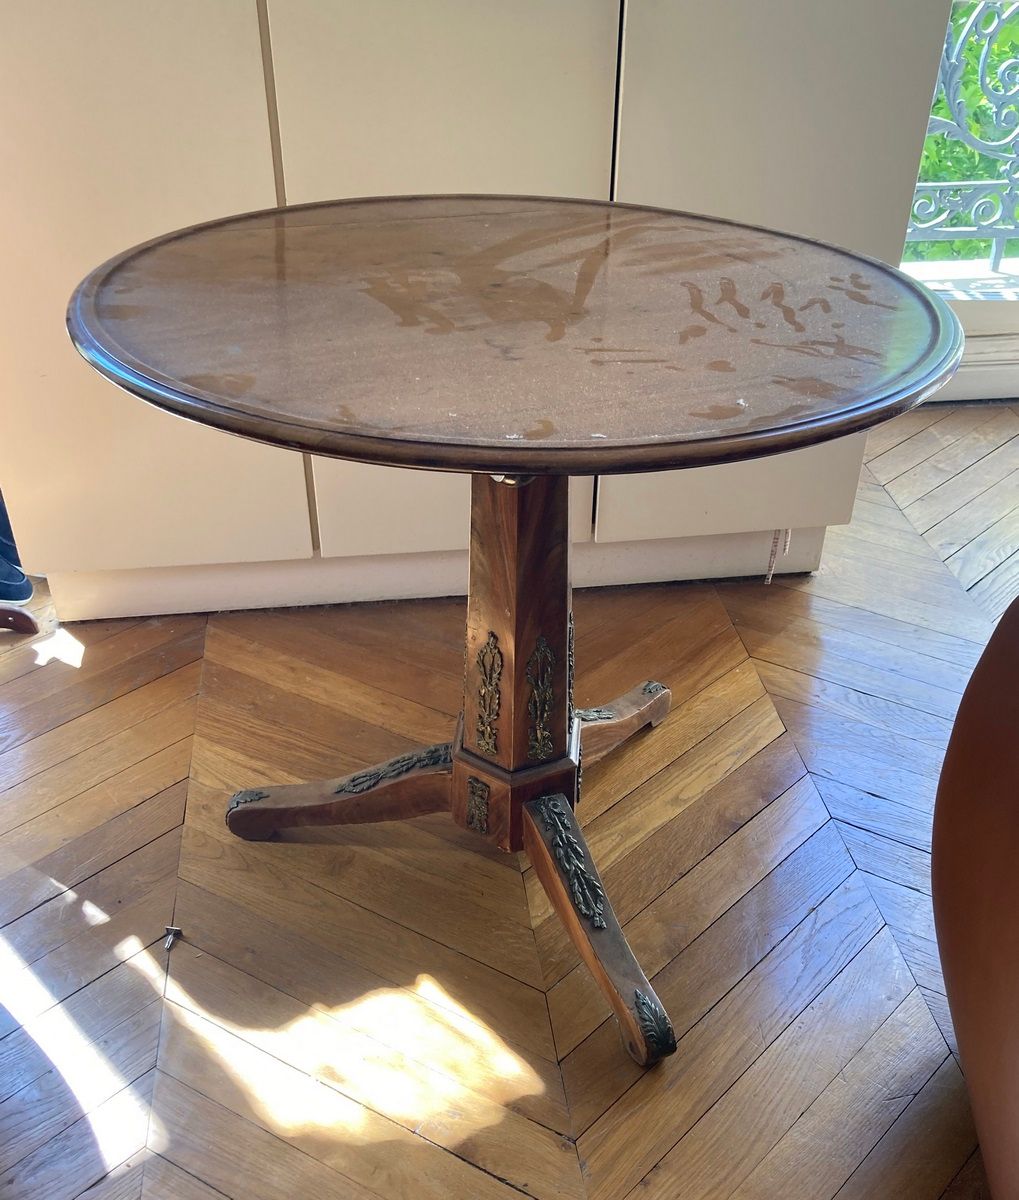 Null 六角形桃花心木三脚架基座桌，带有青铜装饰。

帝国风格，约1900年

高度：75厘米75厘米 - 直径：81厘米

(托盘将被重新固定)